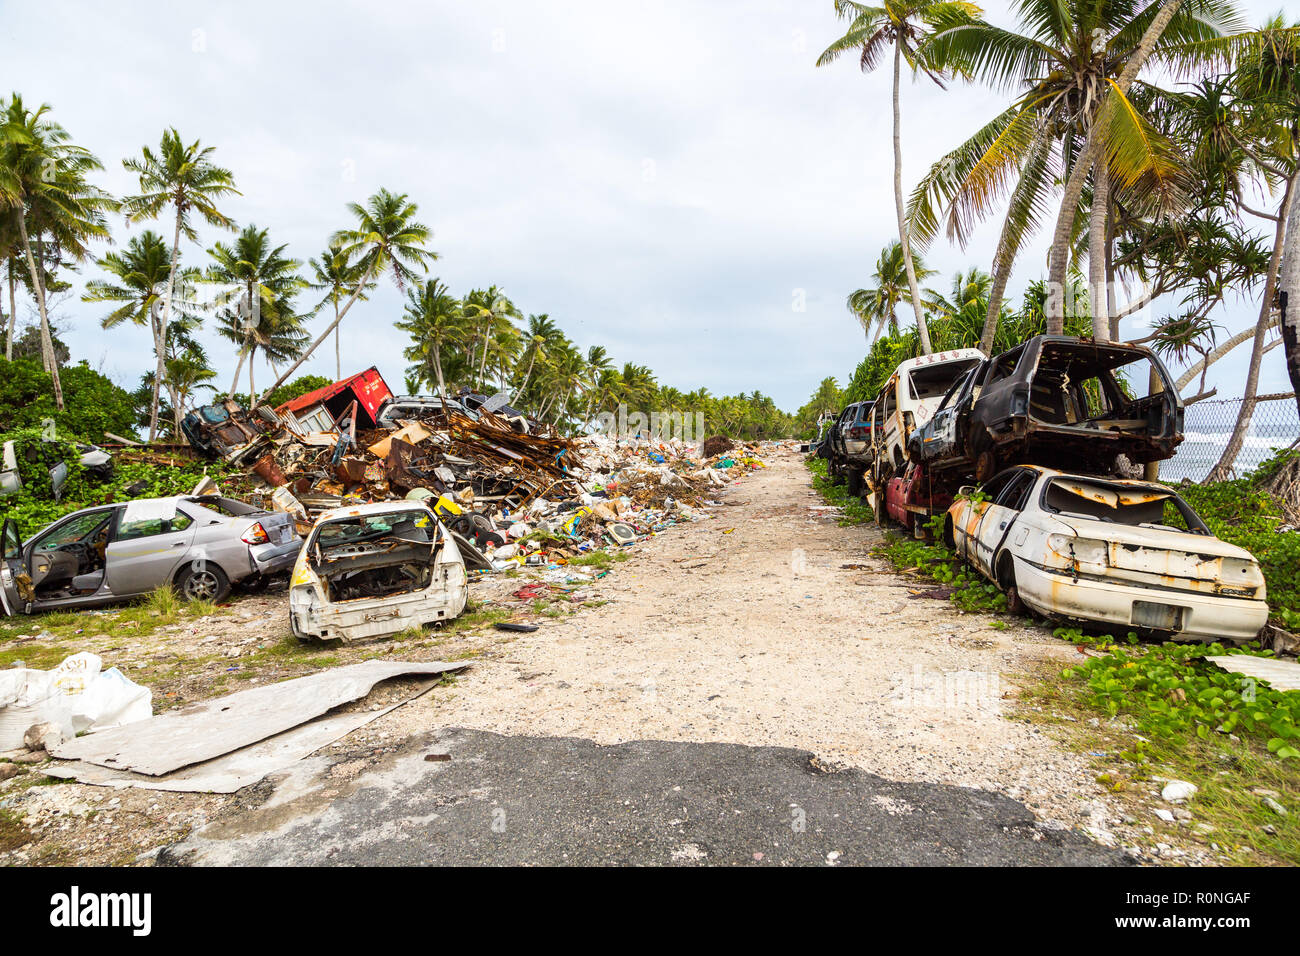 Dépotoir, d'enfouissement à l'atoll de Funafuti, Tuvalu, Polynésie, Océanie, Pacifique Sud. Problèmes de gestion des ordures et écologique de l'île-nation Banque D'Images